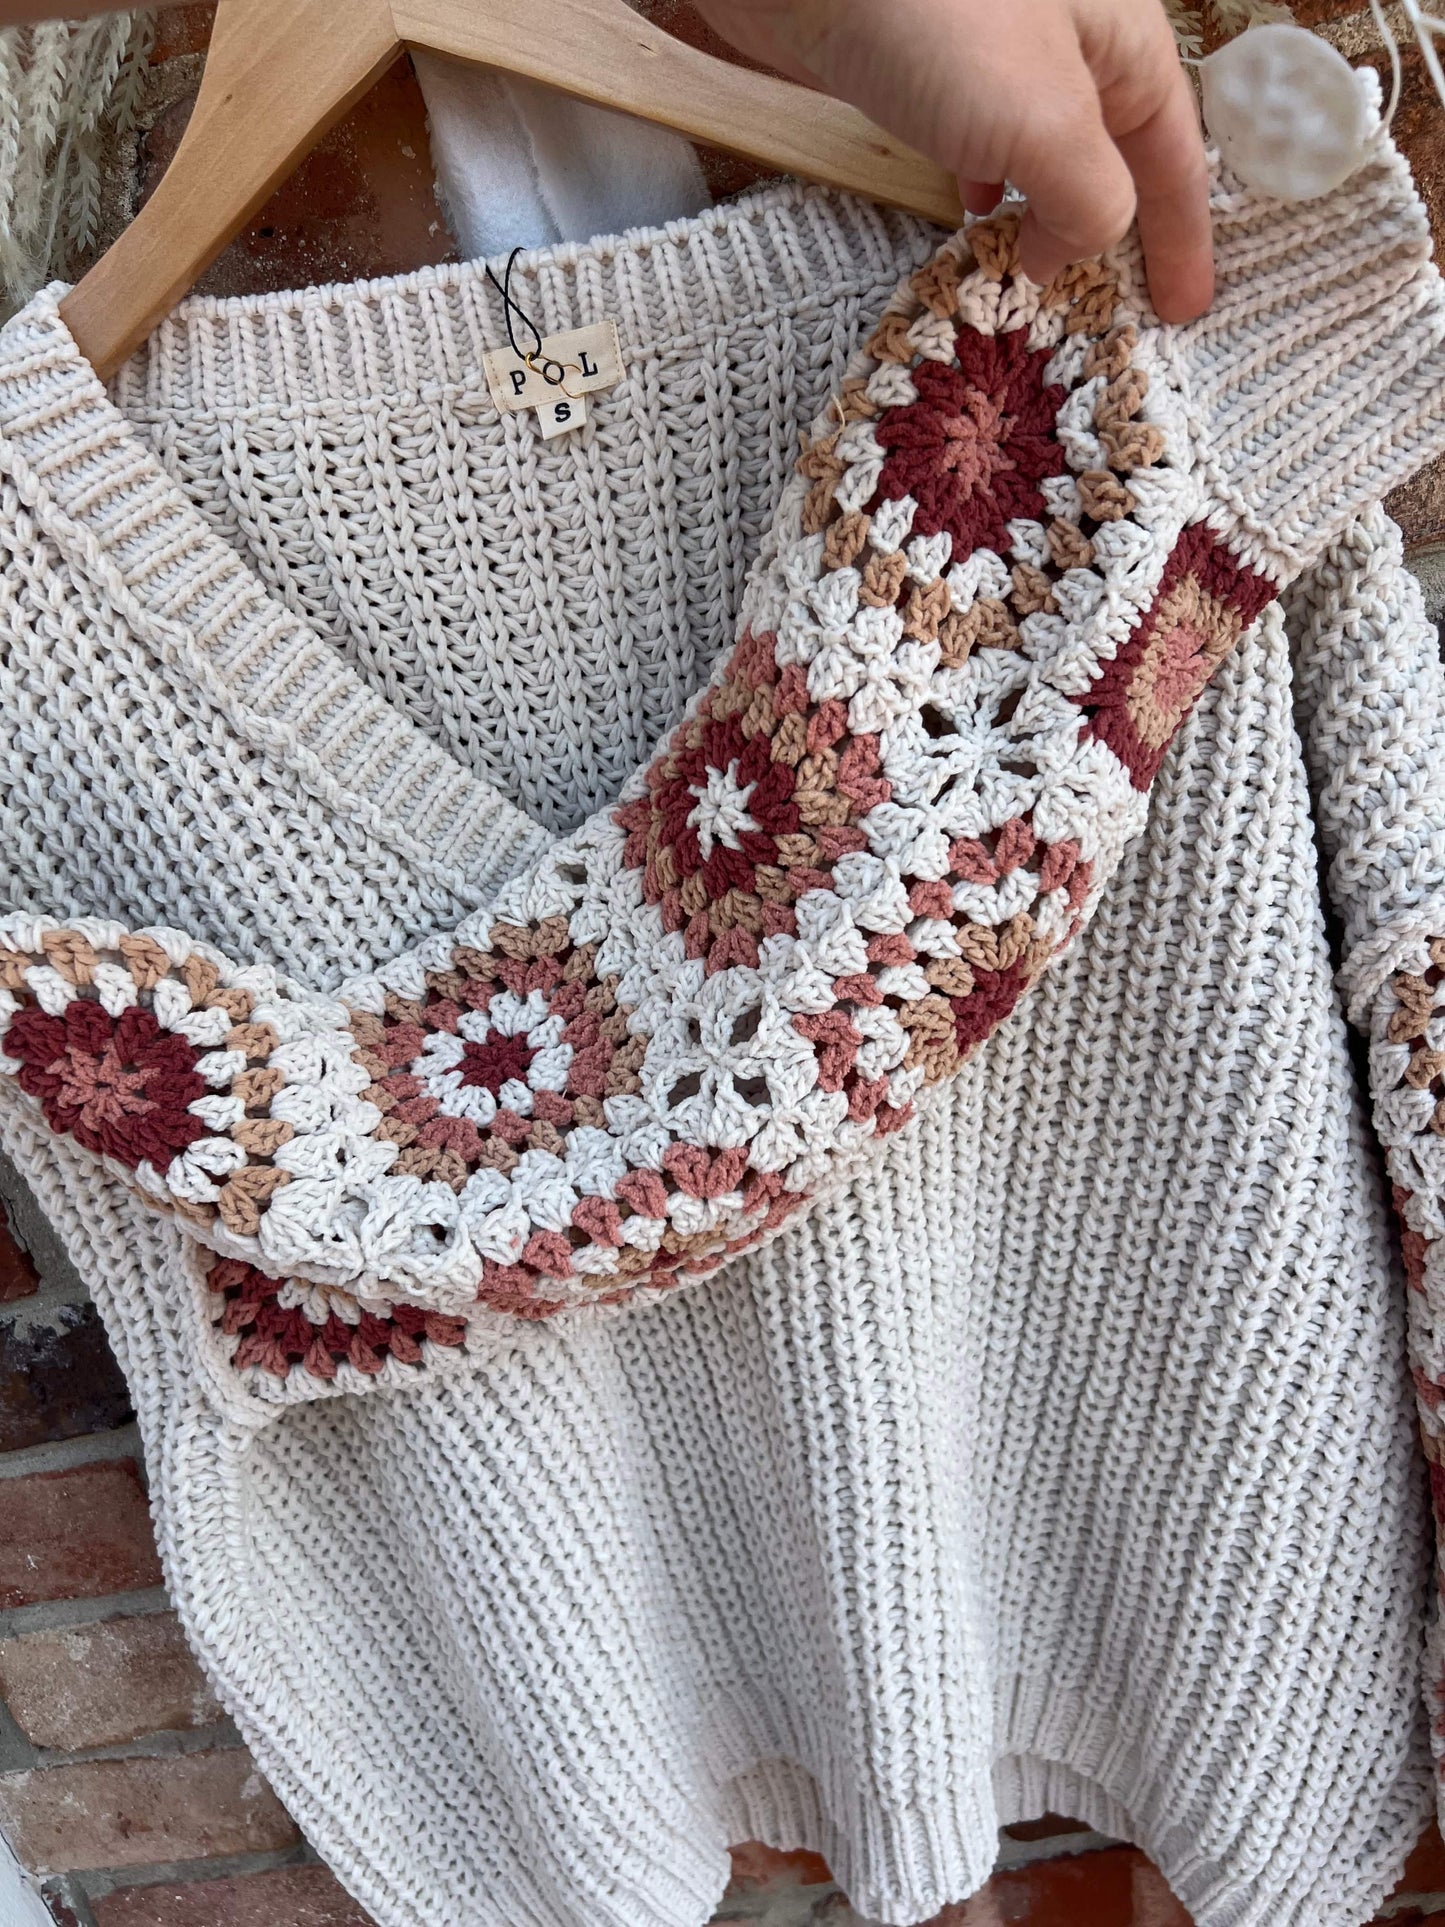 Granny Square Sweater